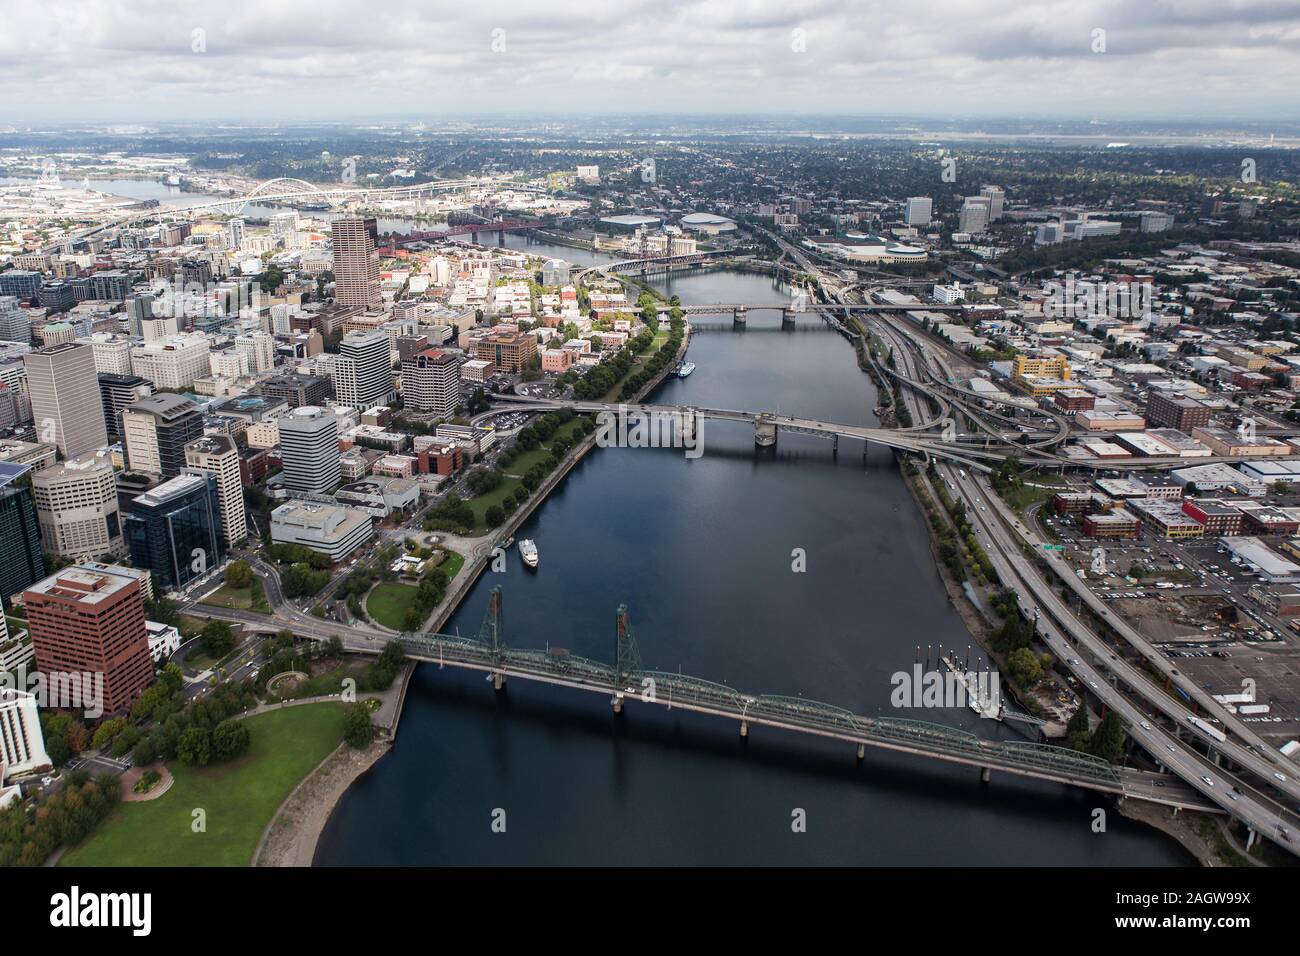 Vista aerea del Fiume Williamette, ponti, edifici e strade nel centro di Portland, Oregon, Stati Uniti d'America. Foto Stock